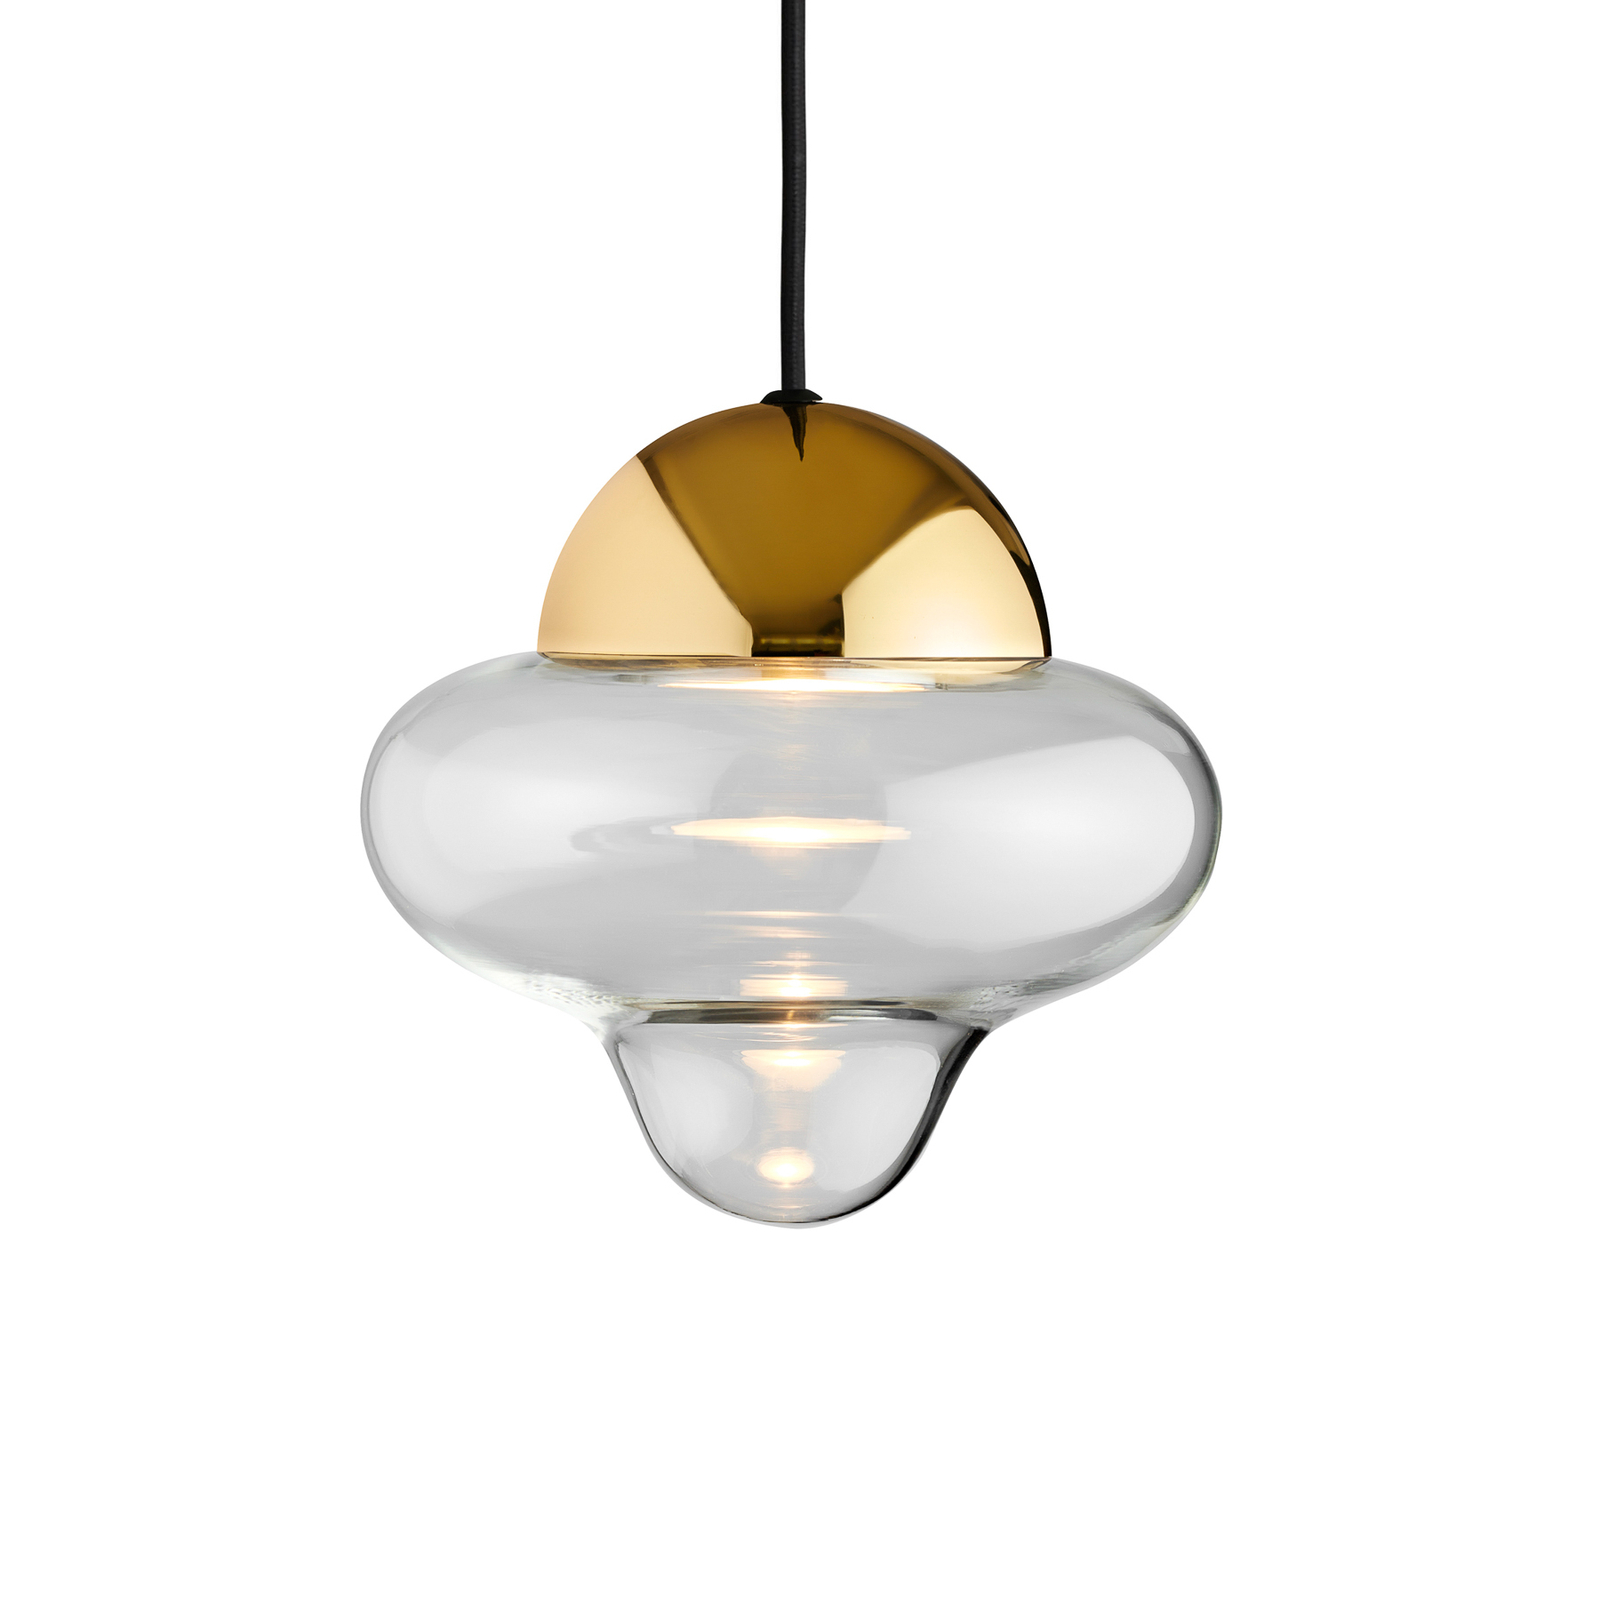 Závěsné svítidlo LED Nutty, čirá / zlatá barva, Ø 18,5 cm, sklo